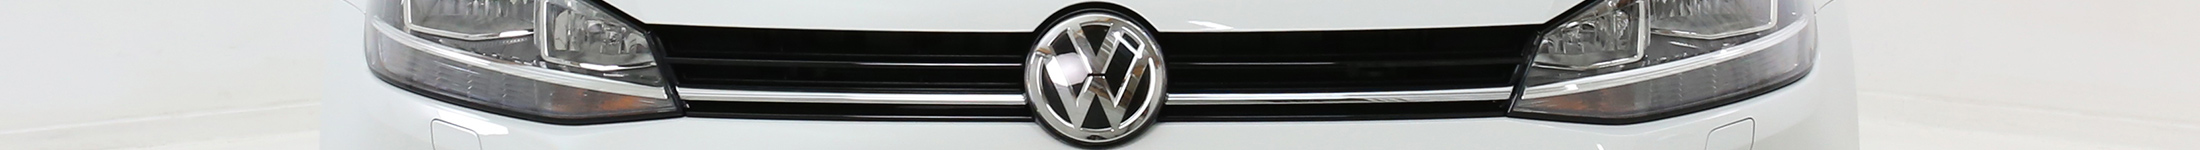 Baner modelu VW - front Volkswagena w ofercie na abonament ze znaczkiem marki 